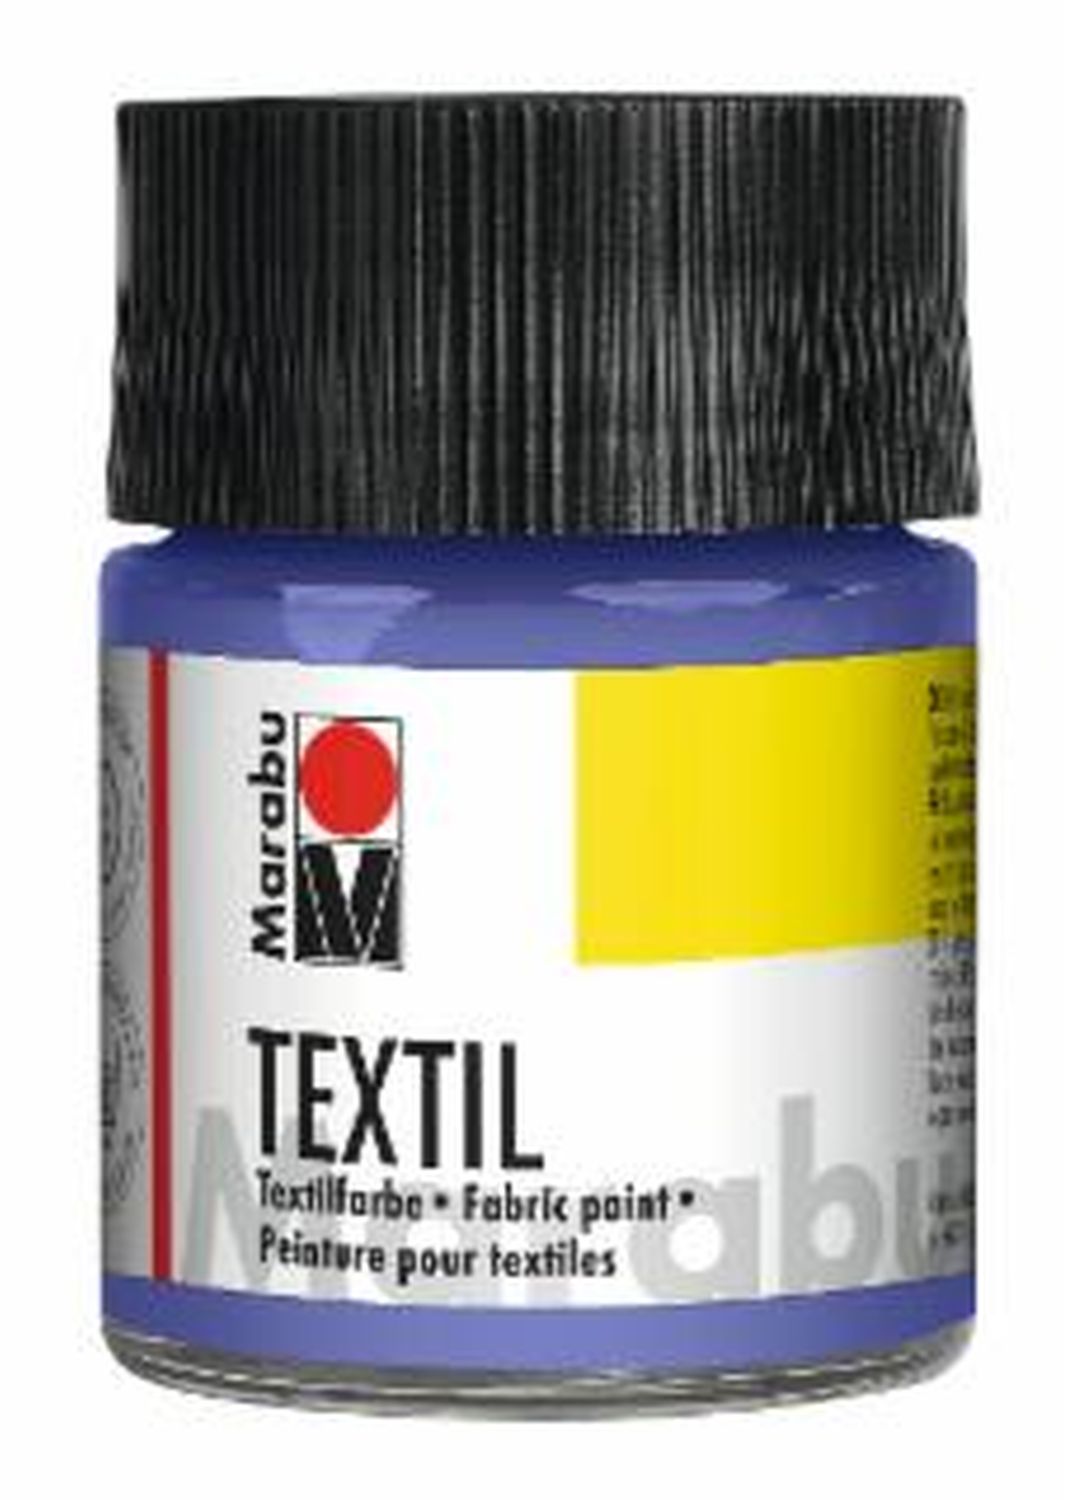 Textil - Flieder 035, 50 ml